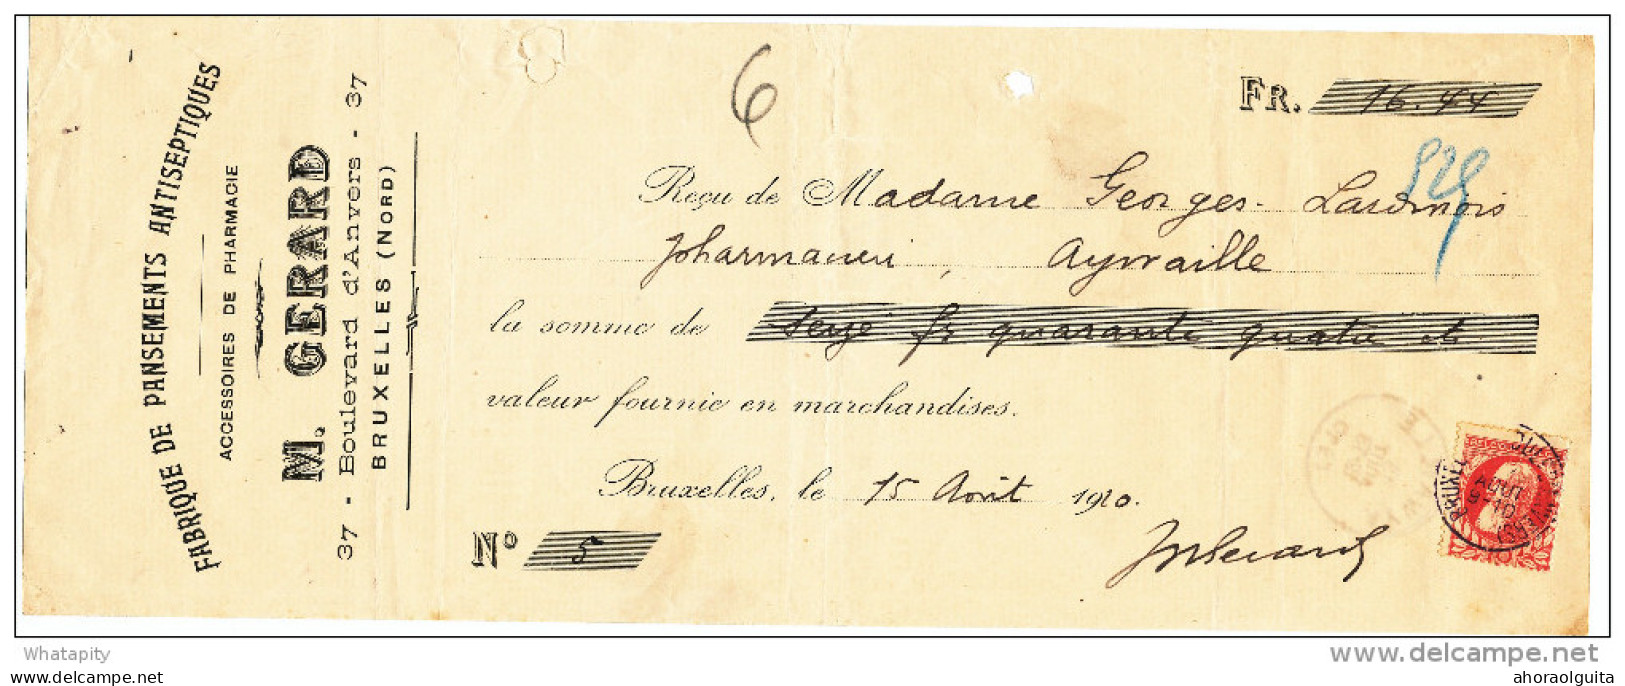 BELGIQUE - Document Financier Via Poste Belge 1910 - Pansements Antiseptiques Gérard à BRUXELLES  -- VV430 - Pharmacy